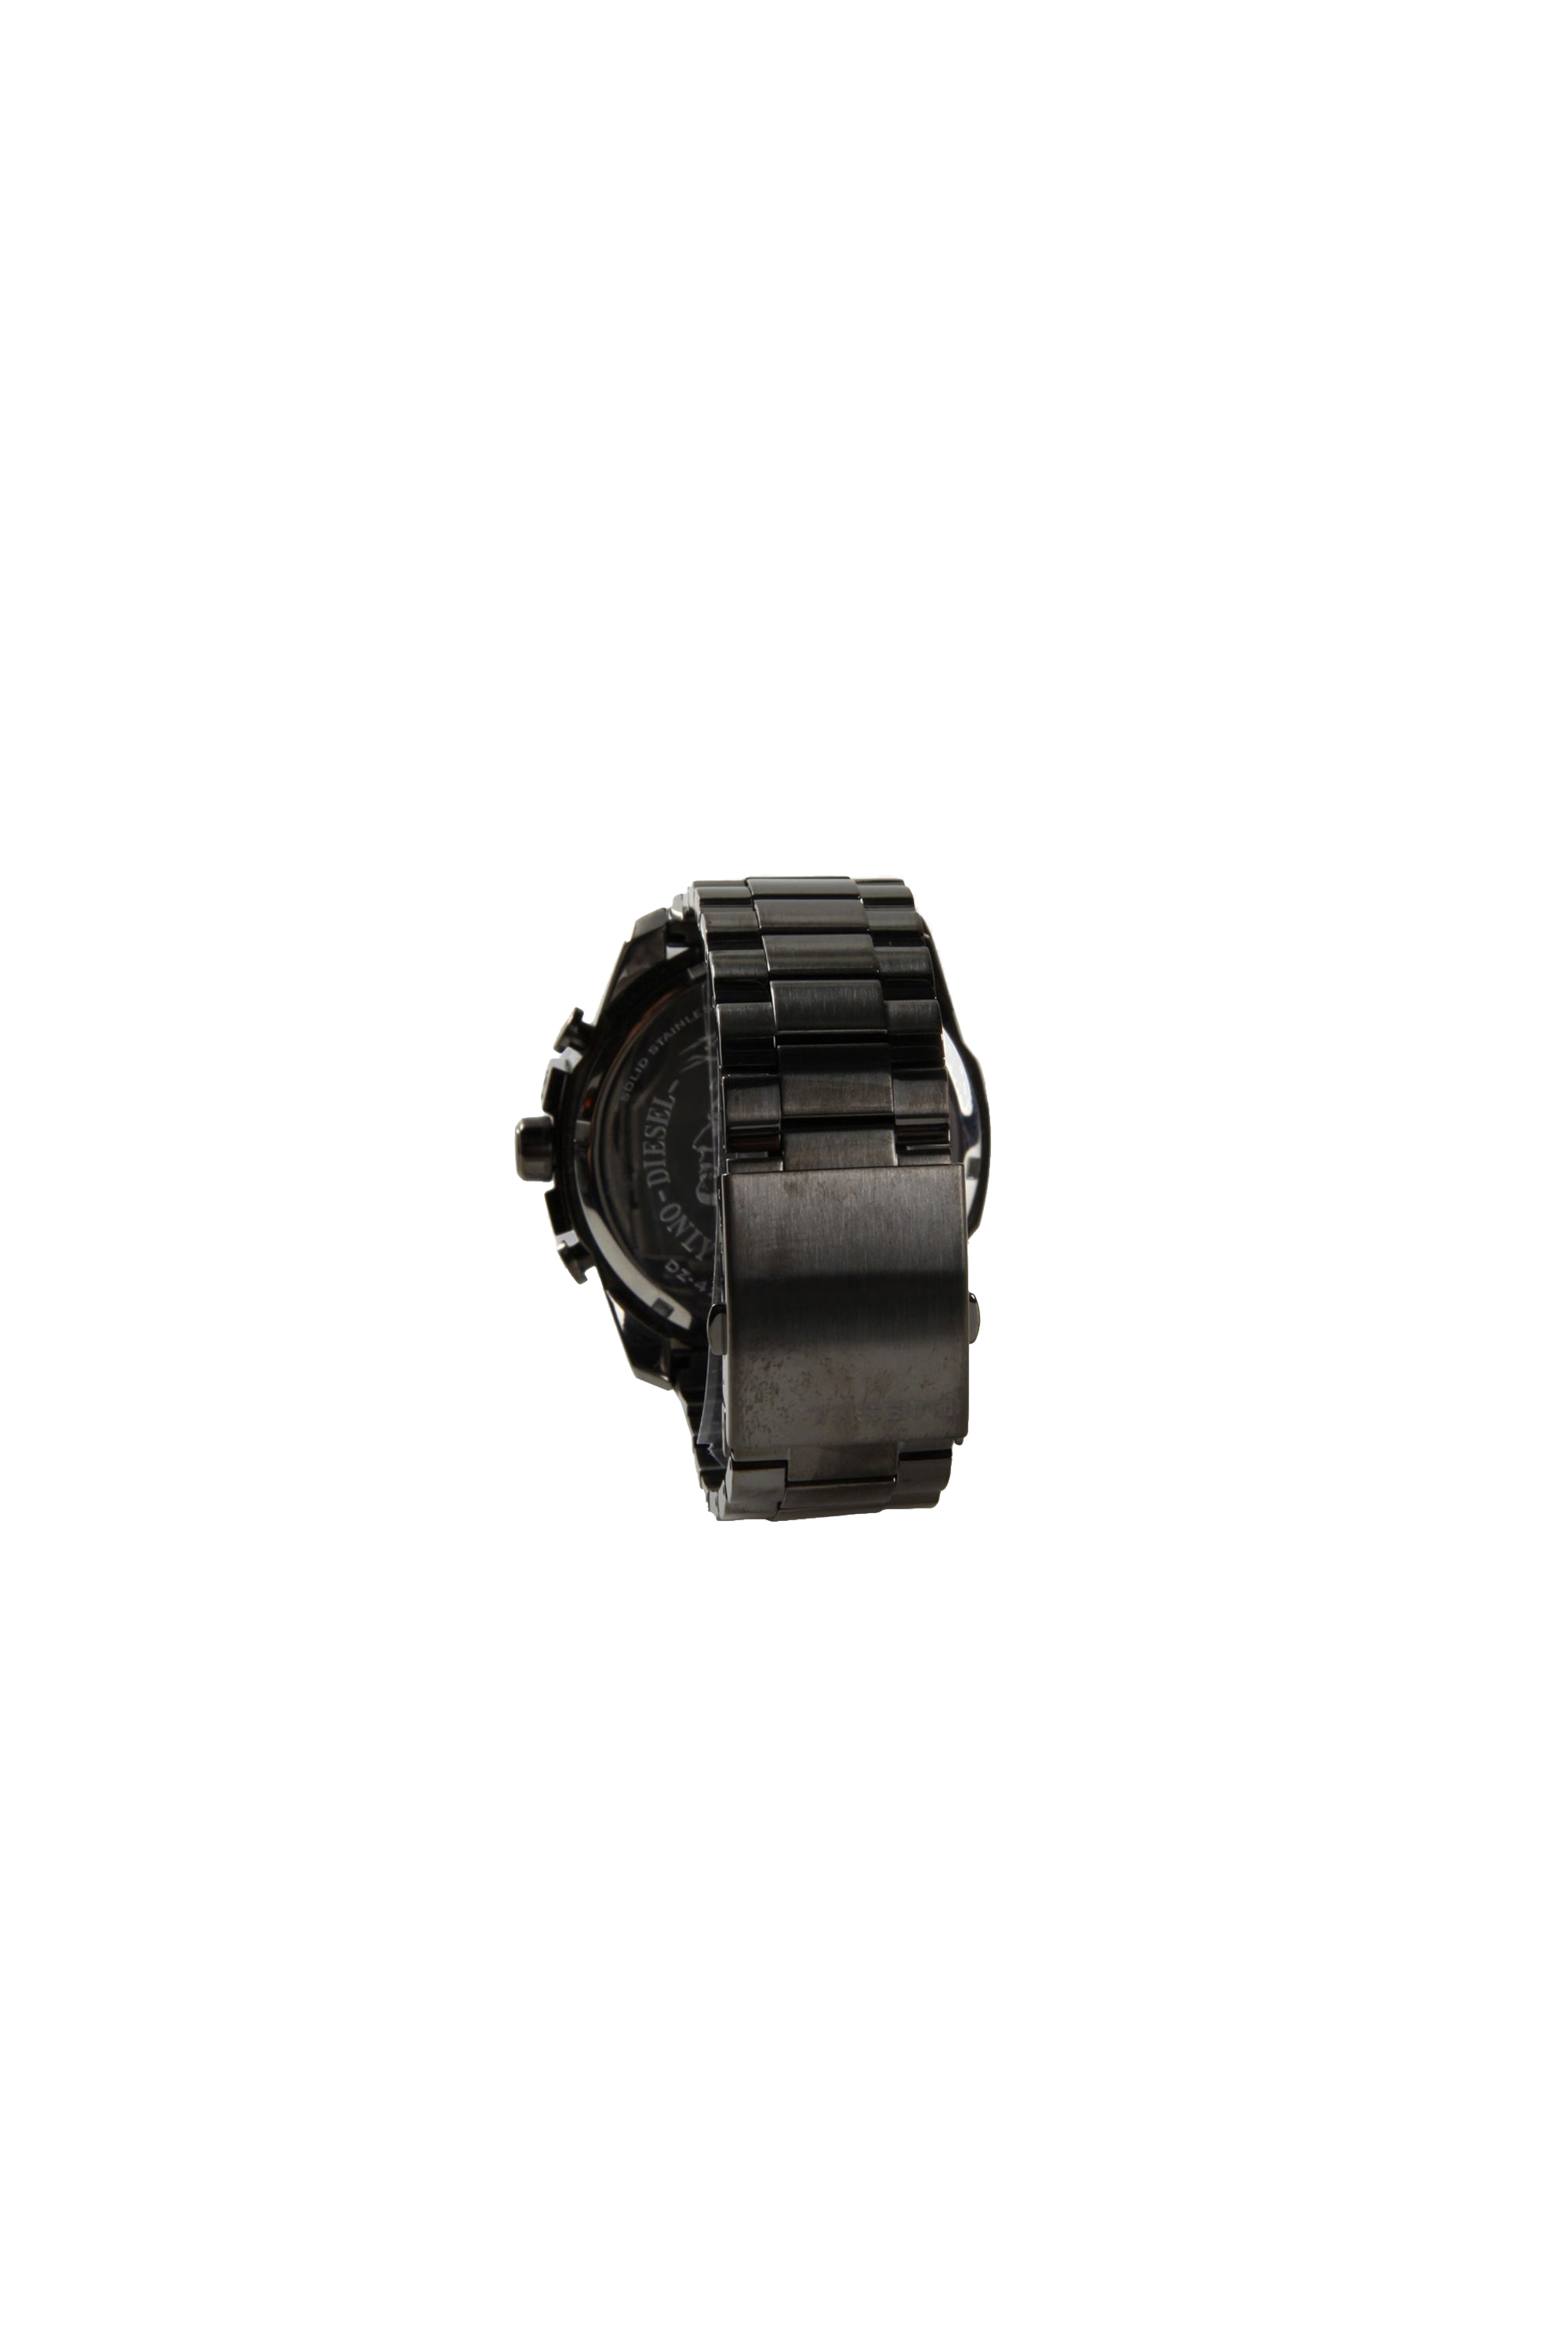 Diesel - DZ4282, Homme Mega Chief montre avec placage noir in Gris - Image 2